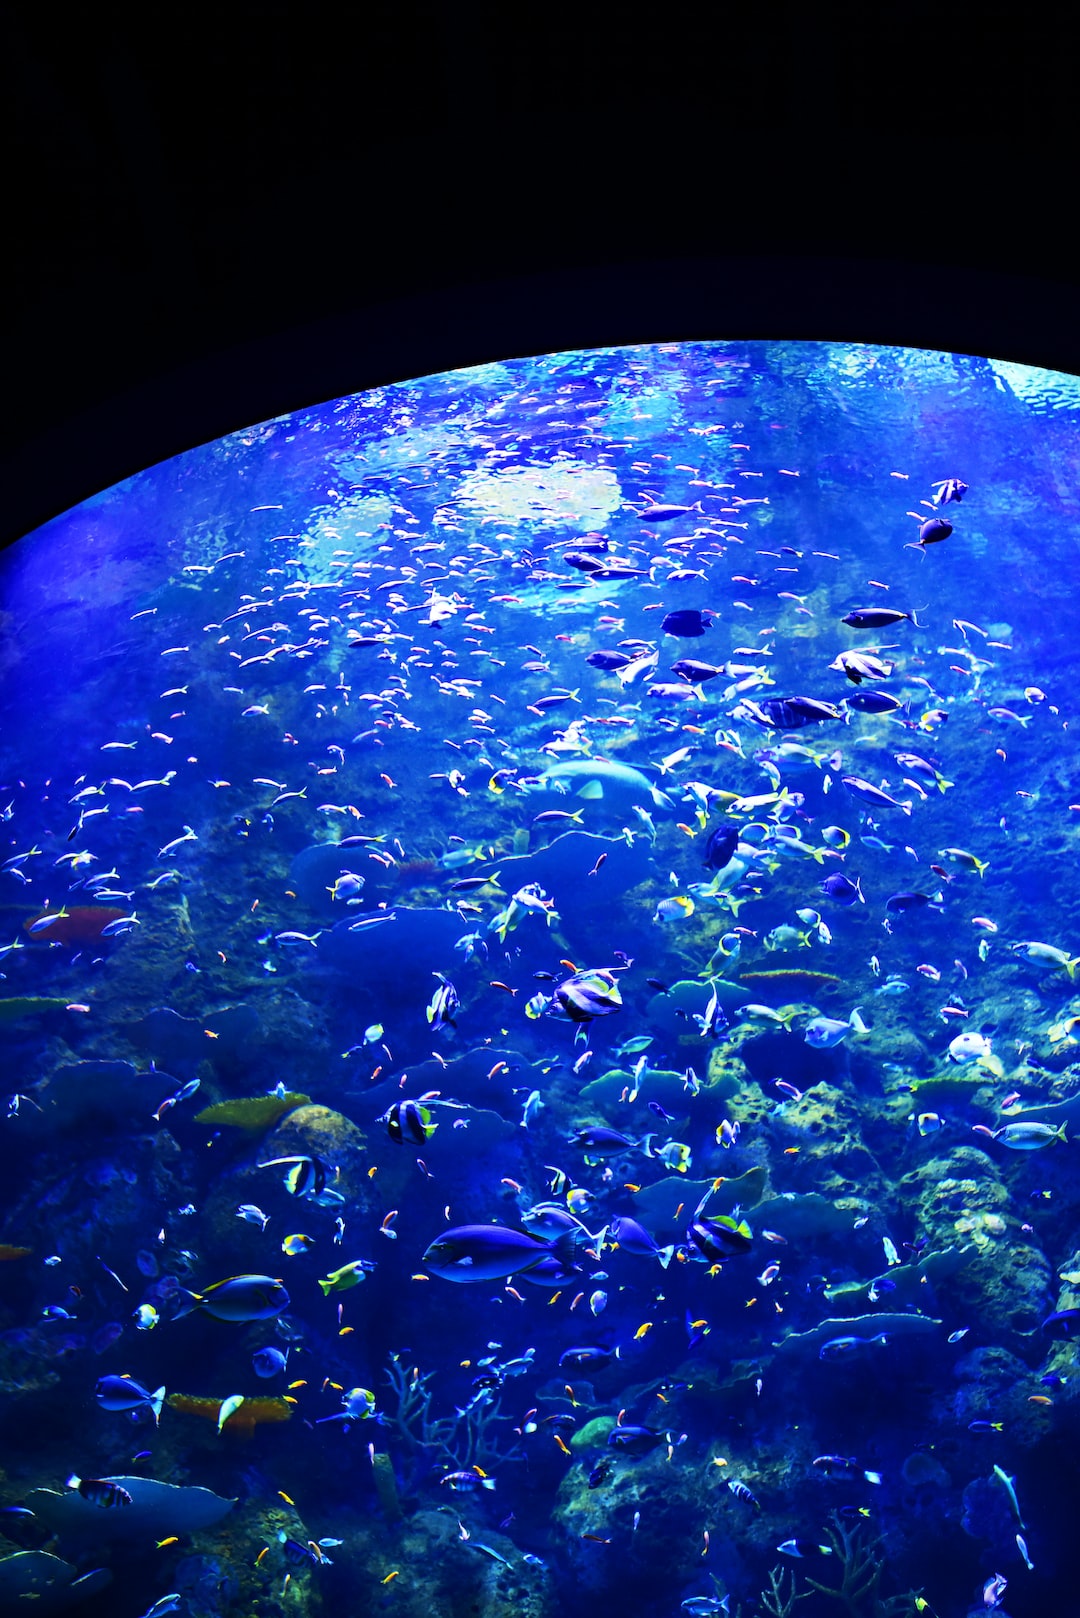 25 wichtige Fragen zu Was Braucht Man Alles Für Ein Axolotl Aquarium?